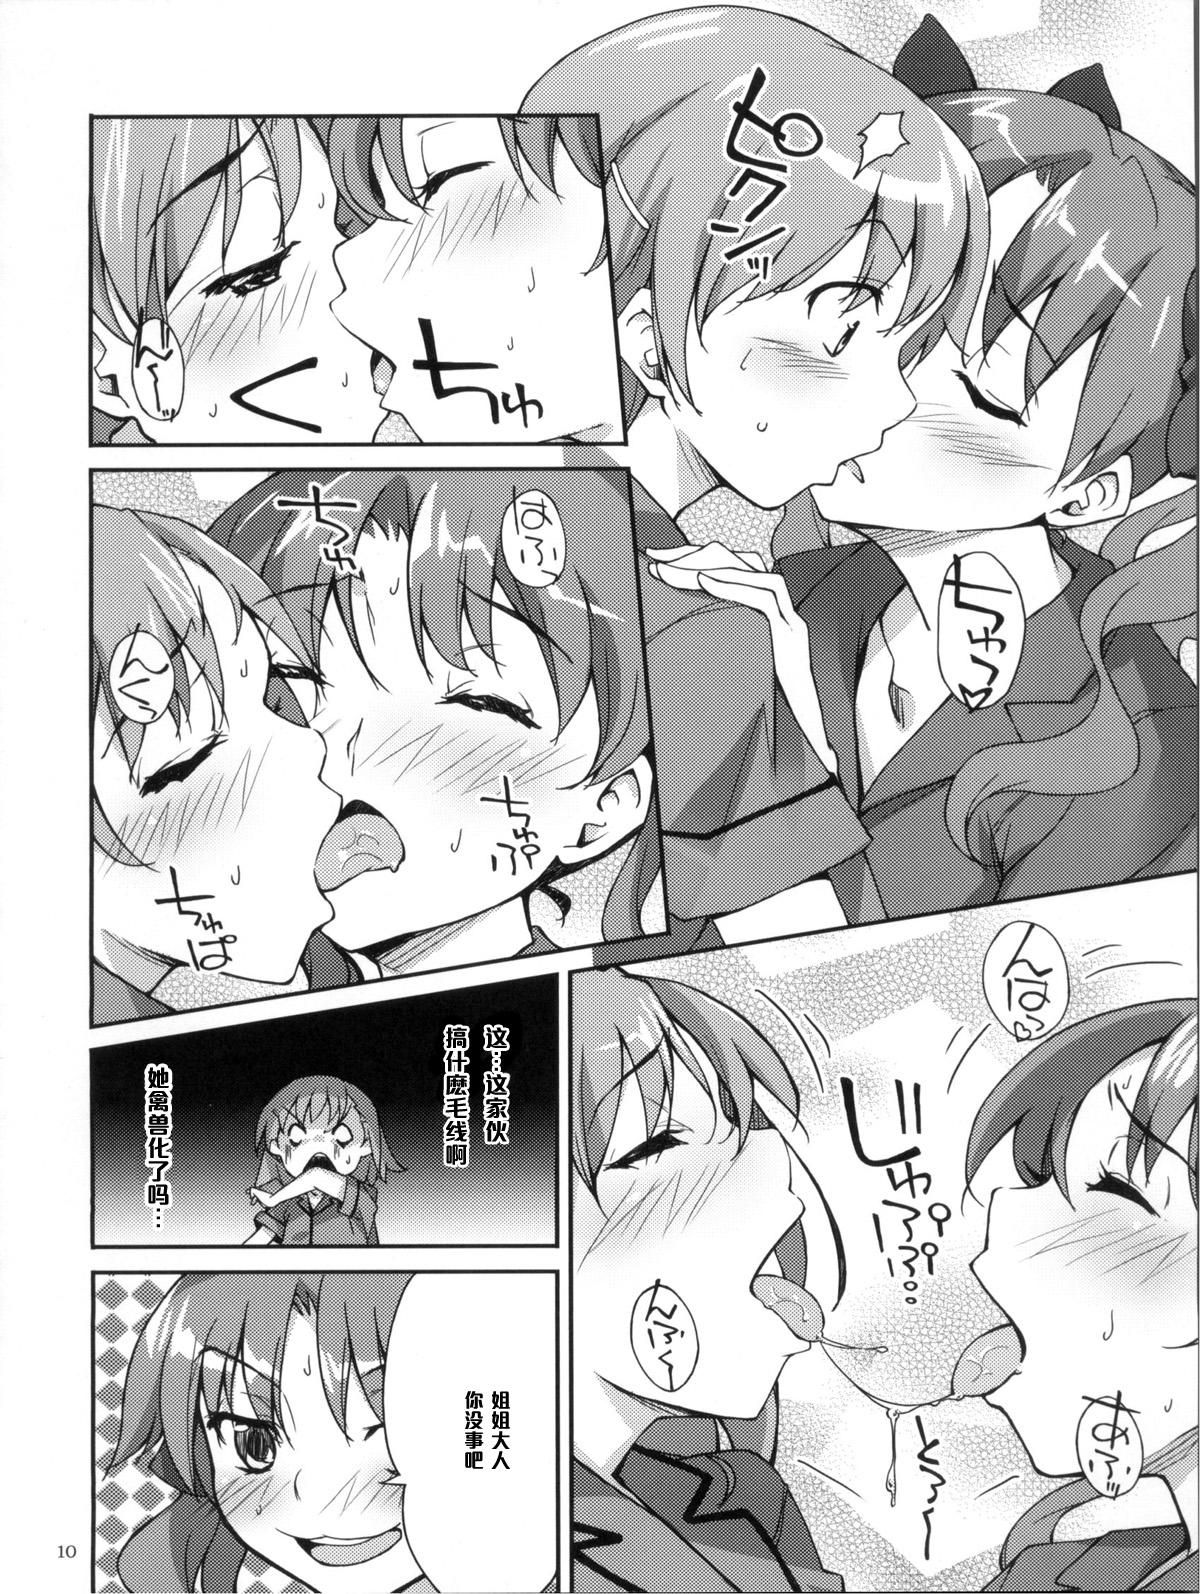 Amature Porn Desu no!! 2 - Toaru kagaku no railgun Masseur - Page 10